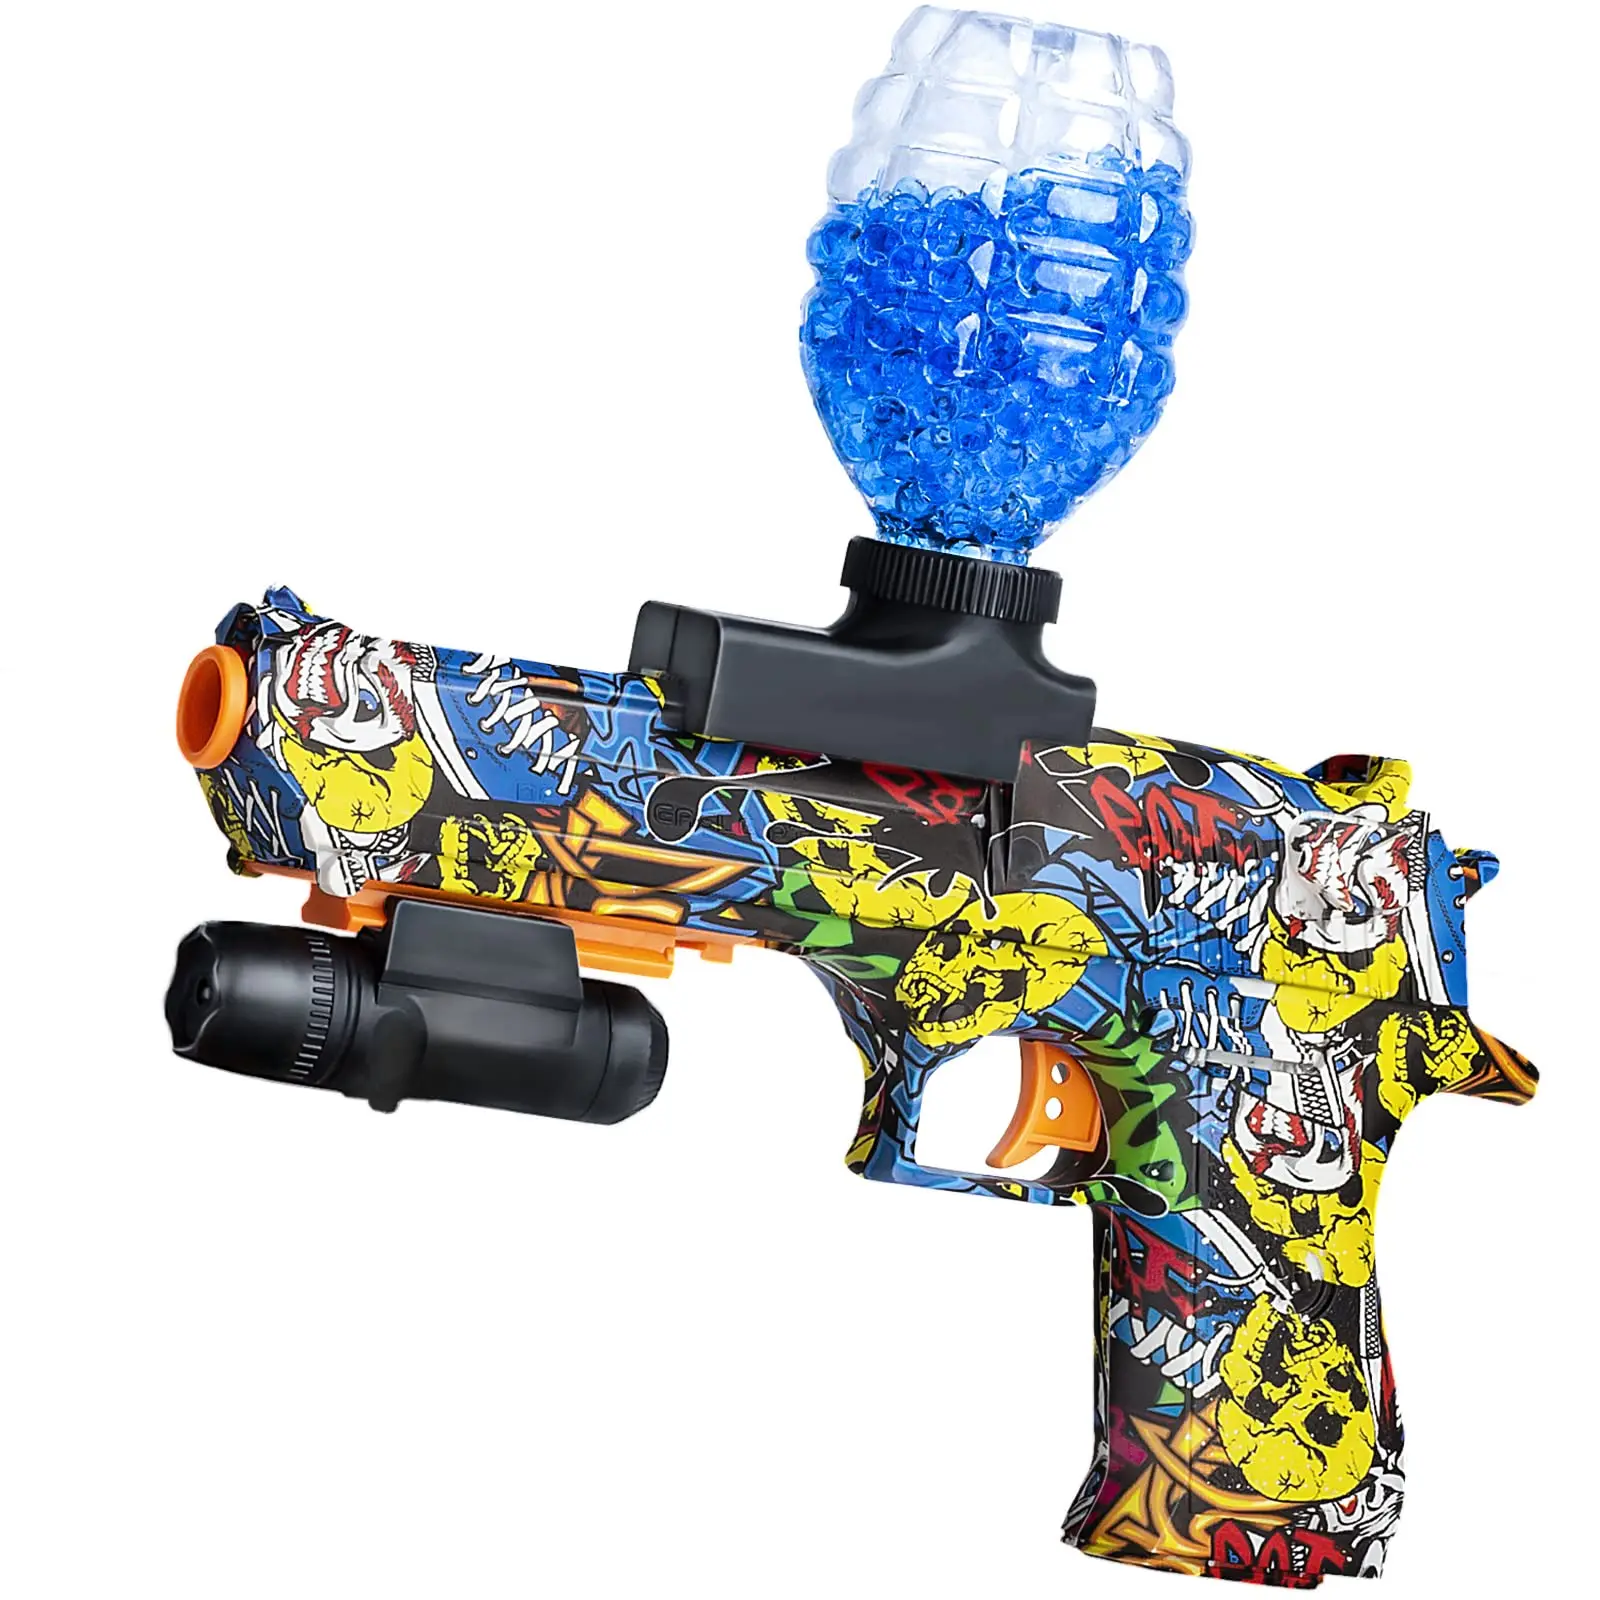 

Электрический игрушечный пистолет-брызговик из геля для игр на открытом воздухе CS, для страйкбола, экологический гелевый шар, бластер, пистолет в подарок для детей и взрослых